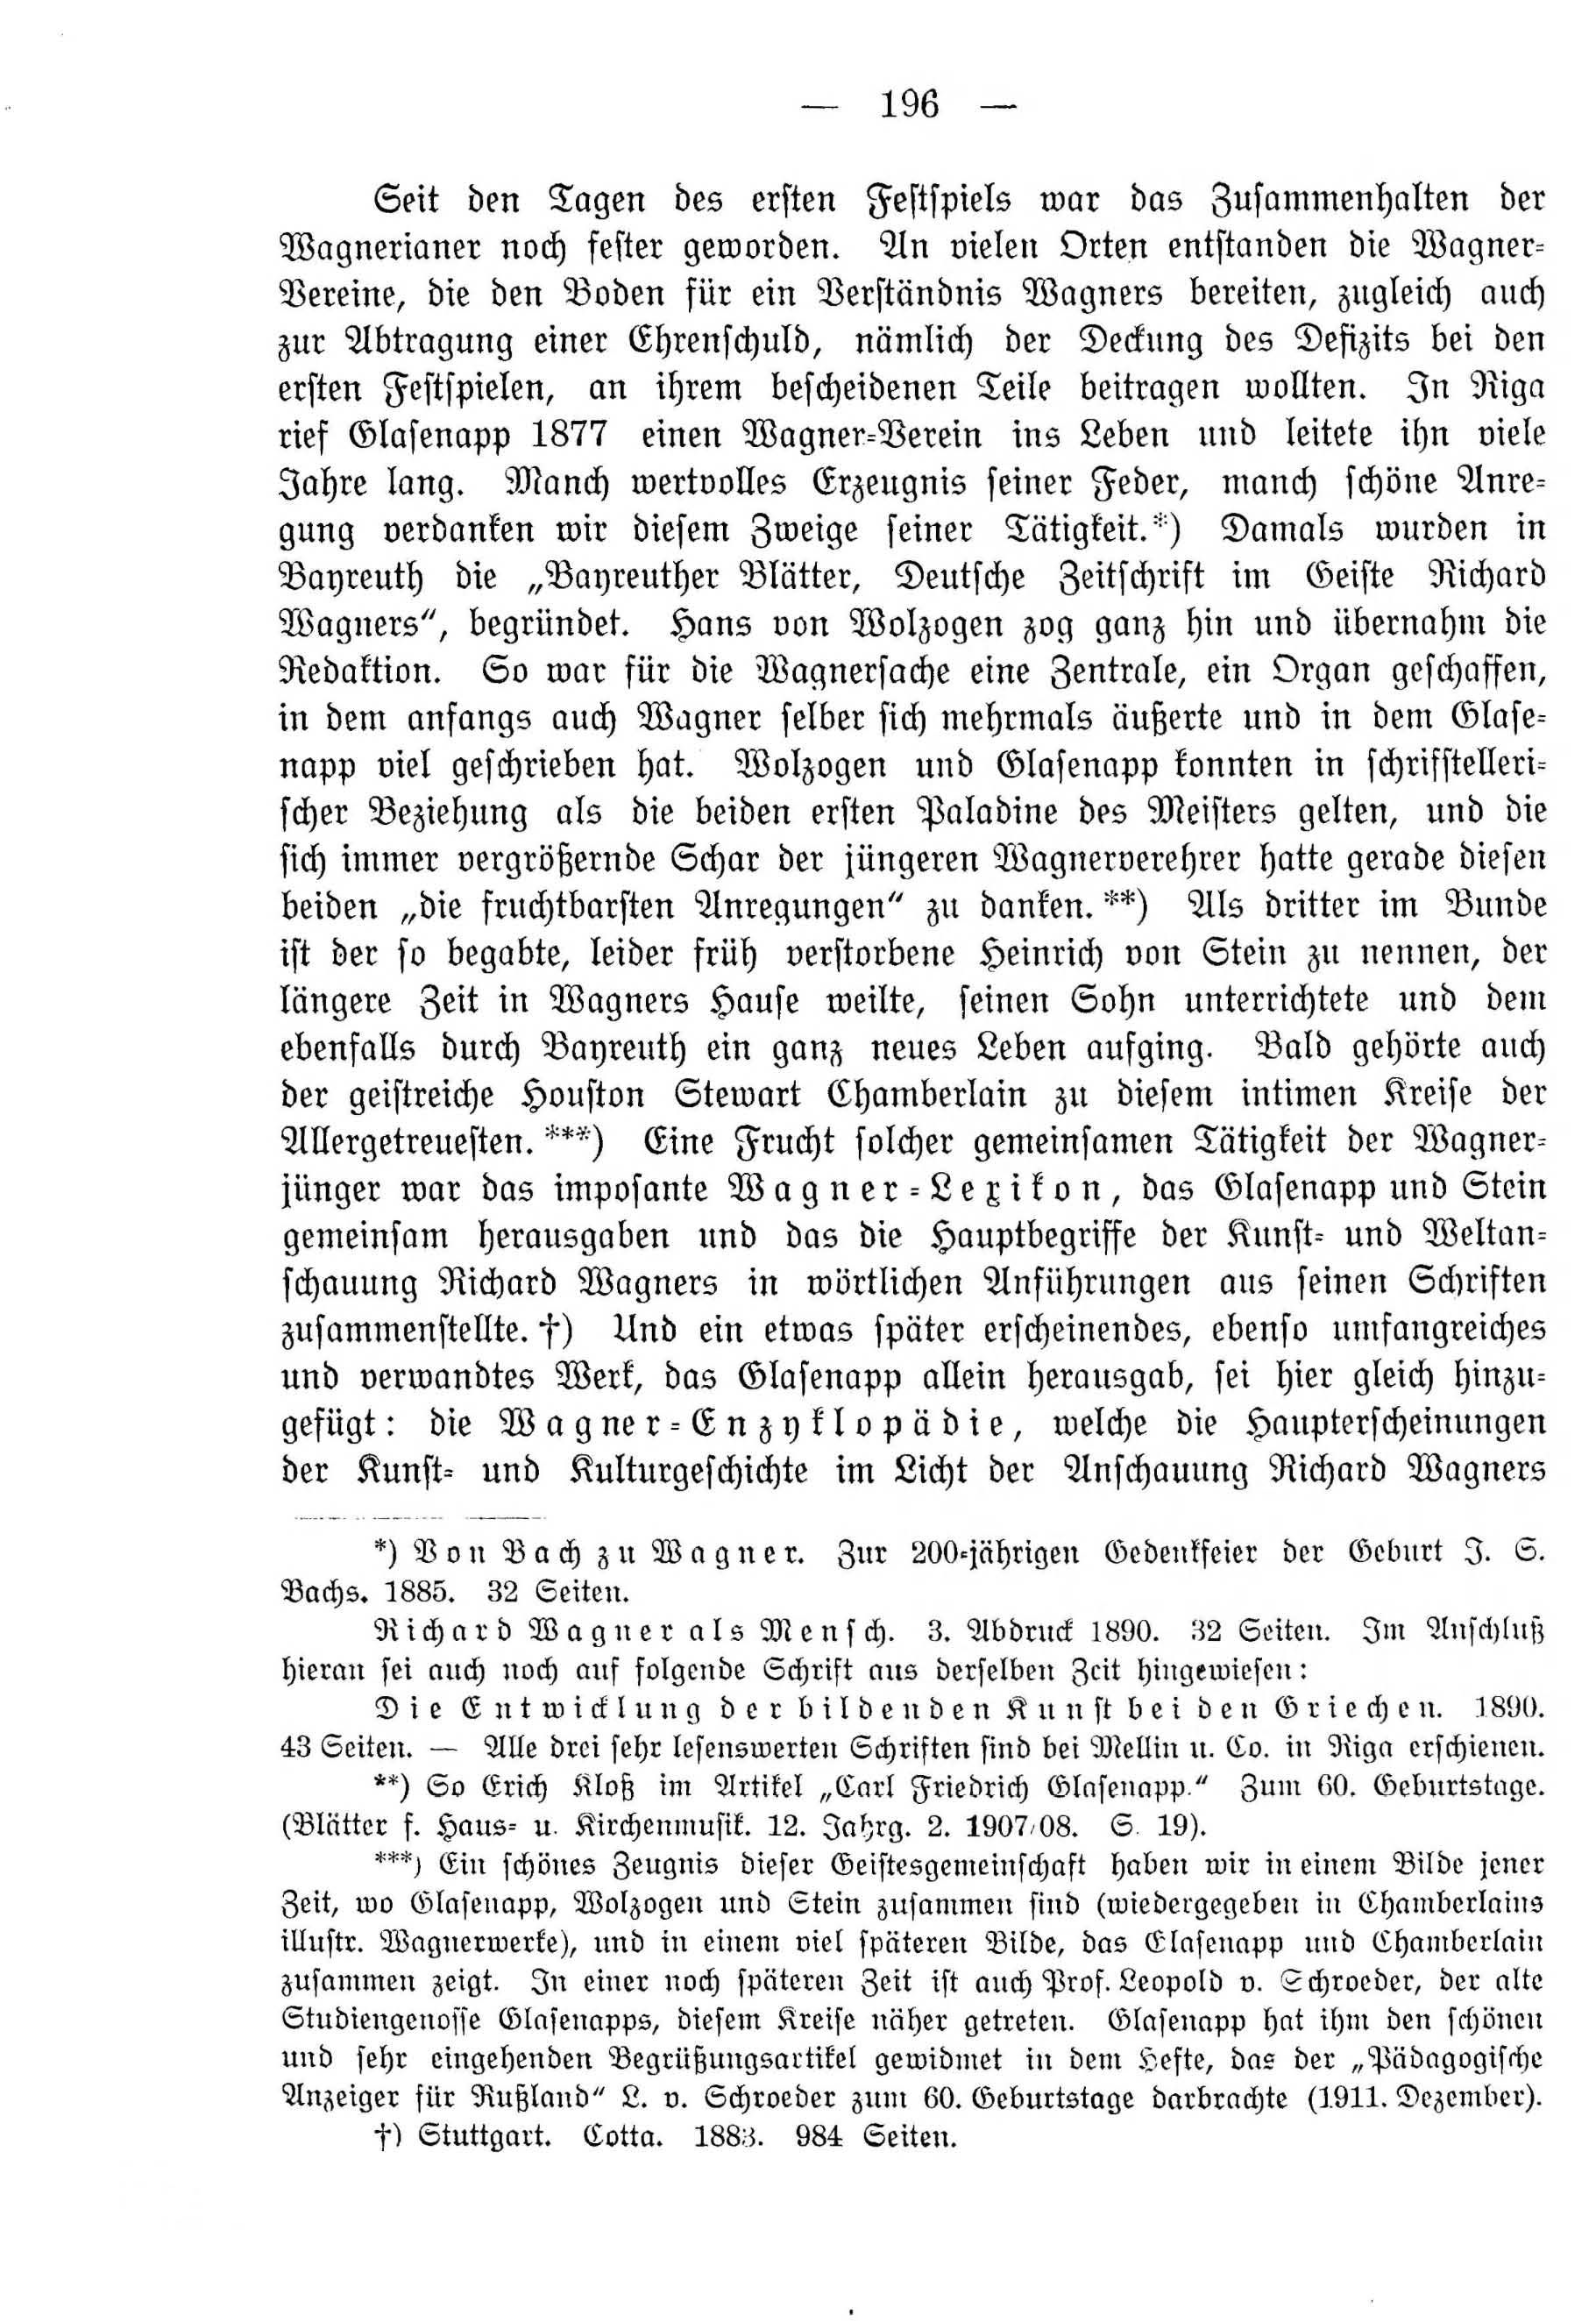 Deutsche Monatsschrift für Russland [4] (1915) | 196. (196) Main body of text